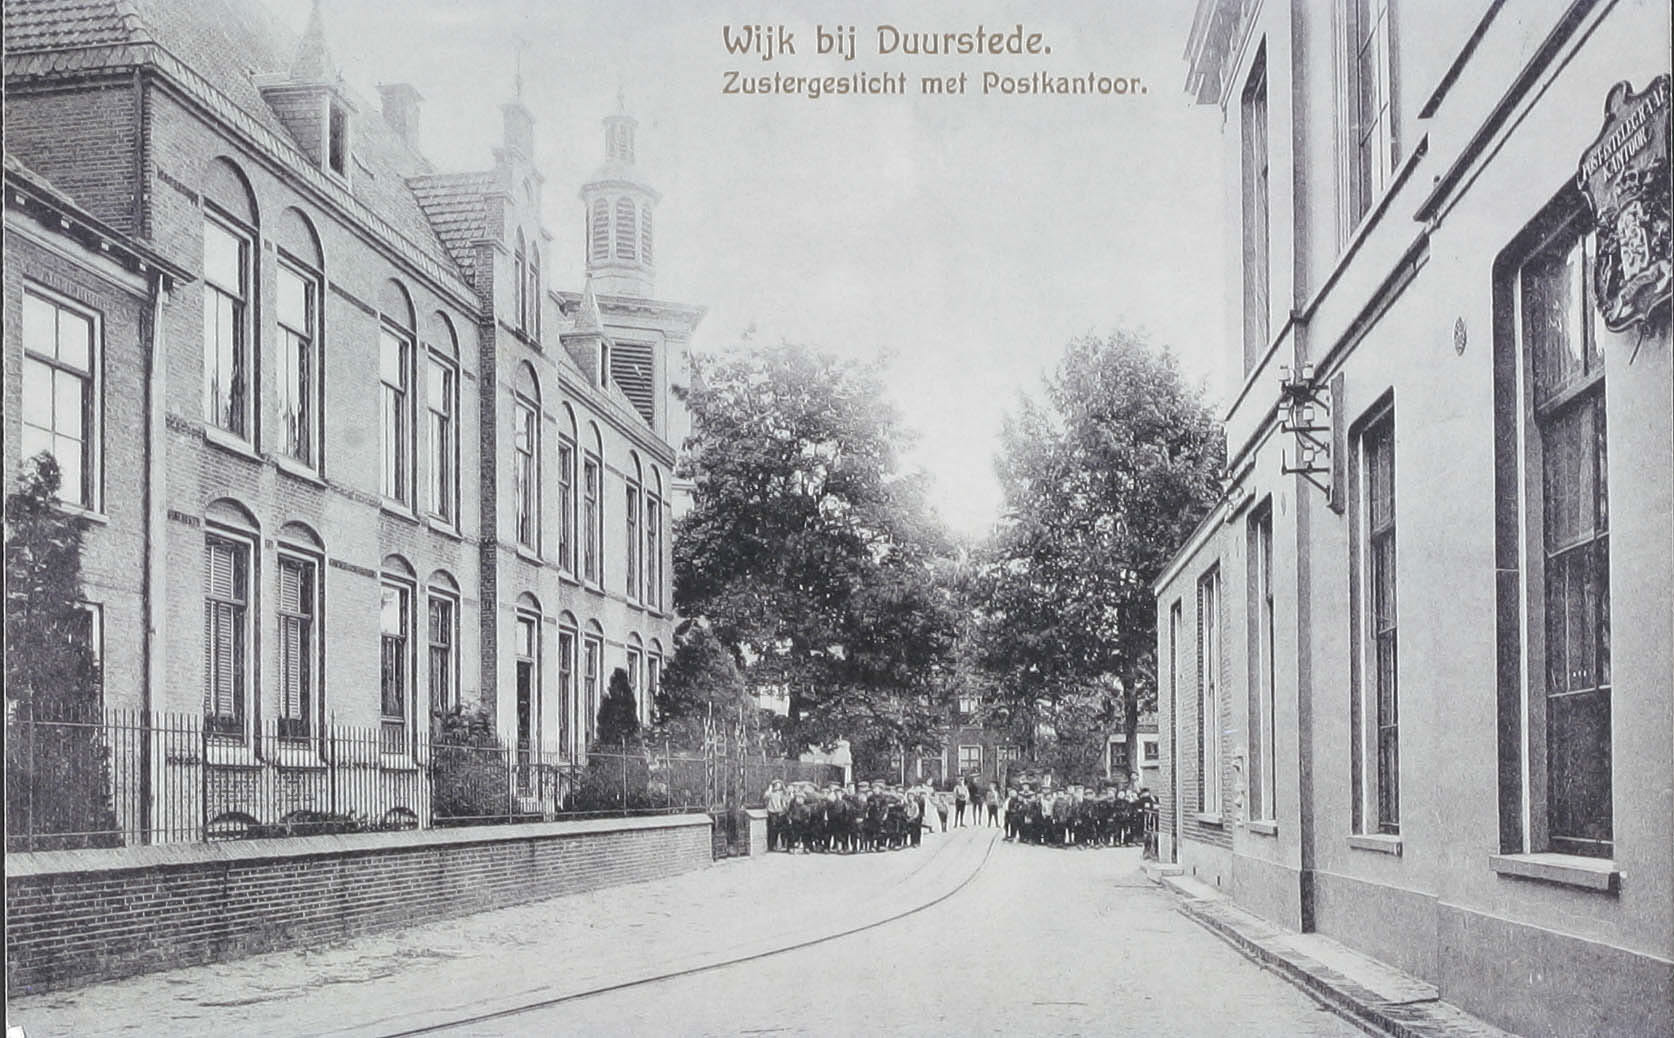 Oude foto van het Zustergesticht in Wijk bij Duurstede